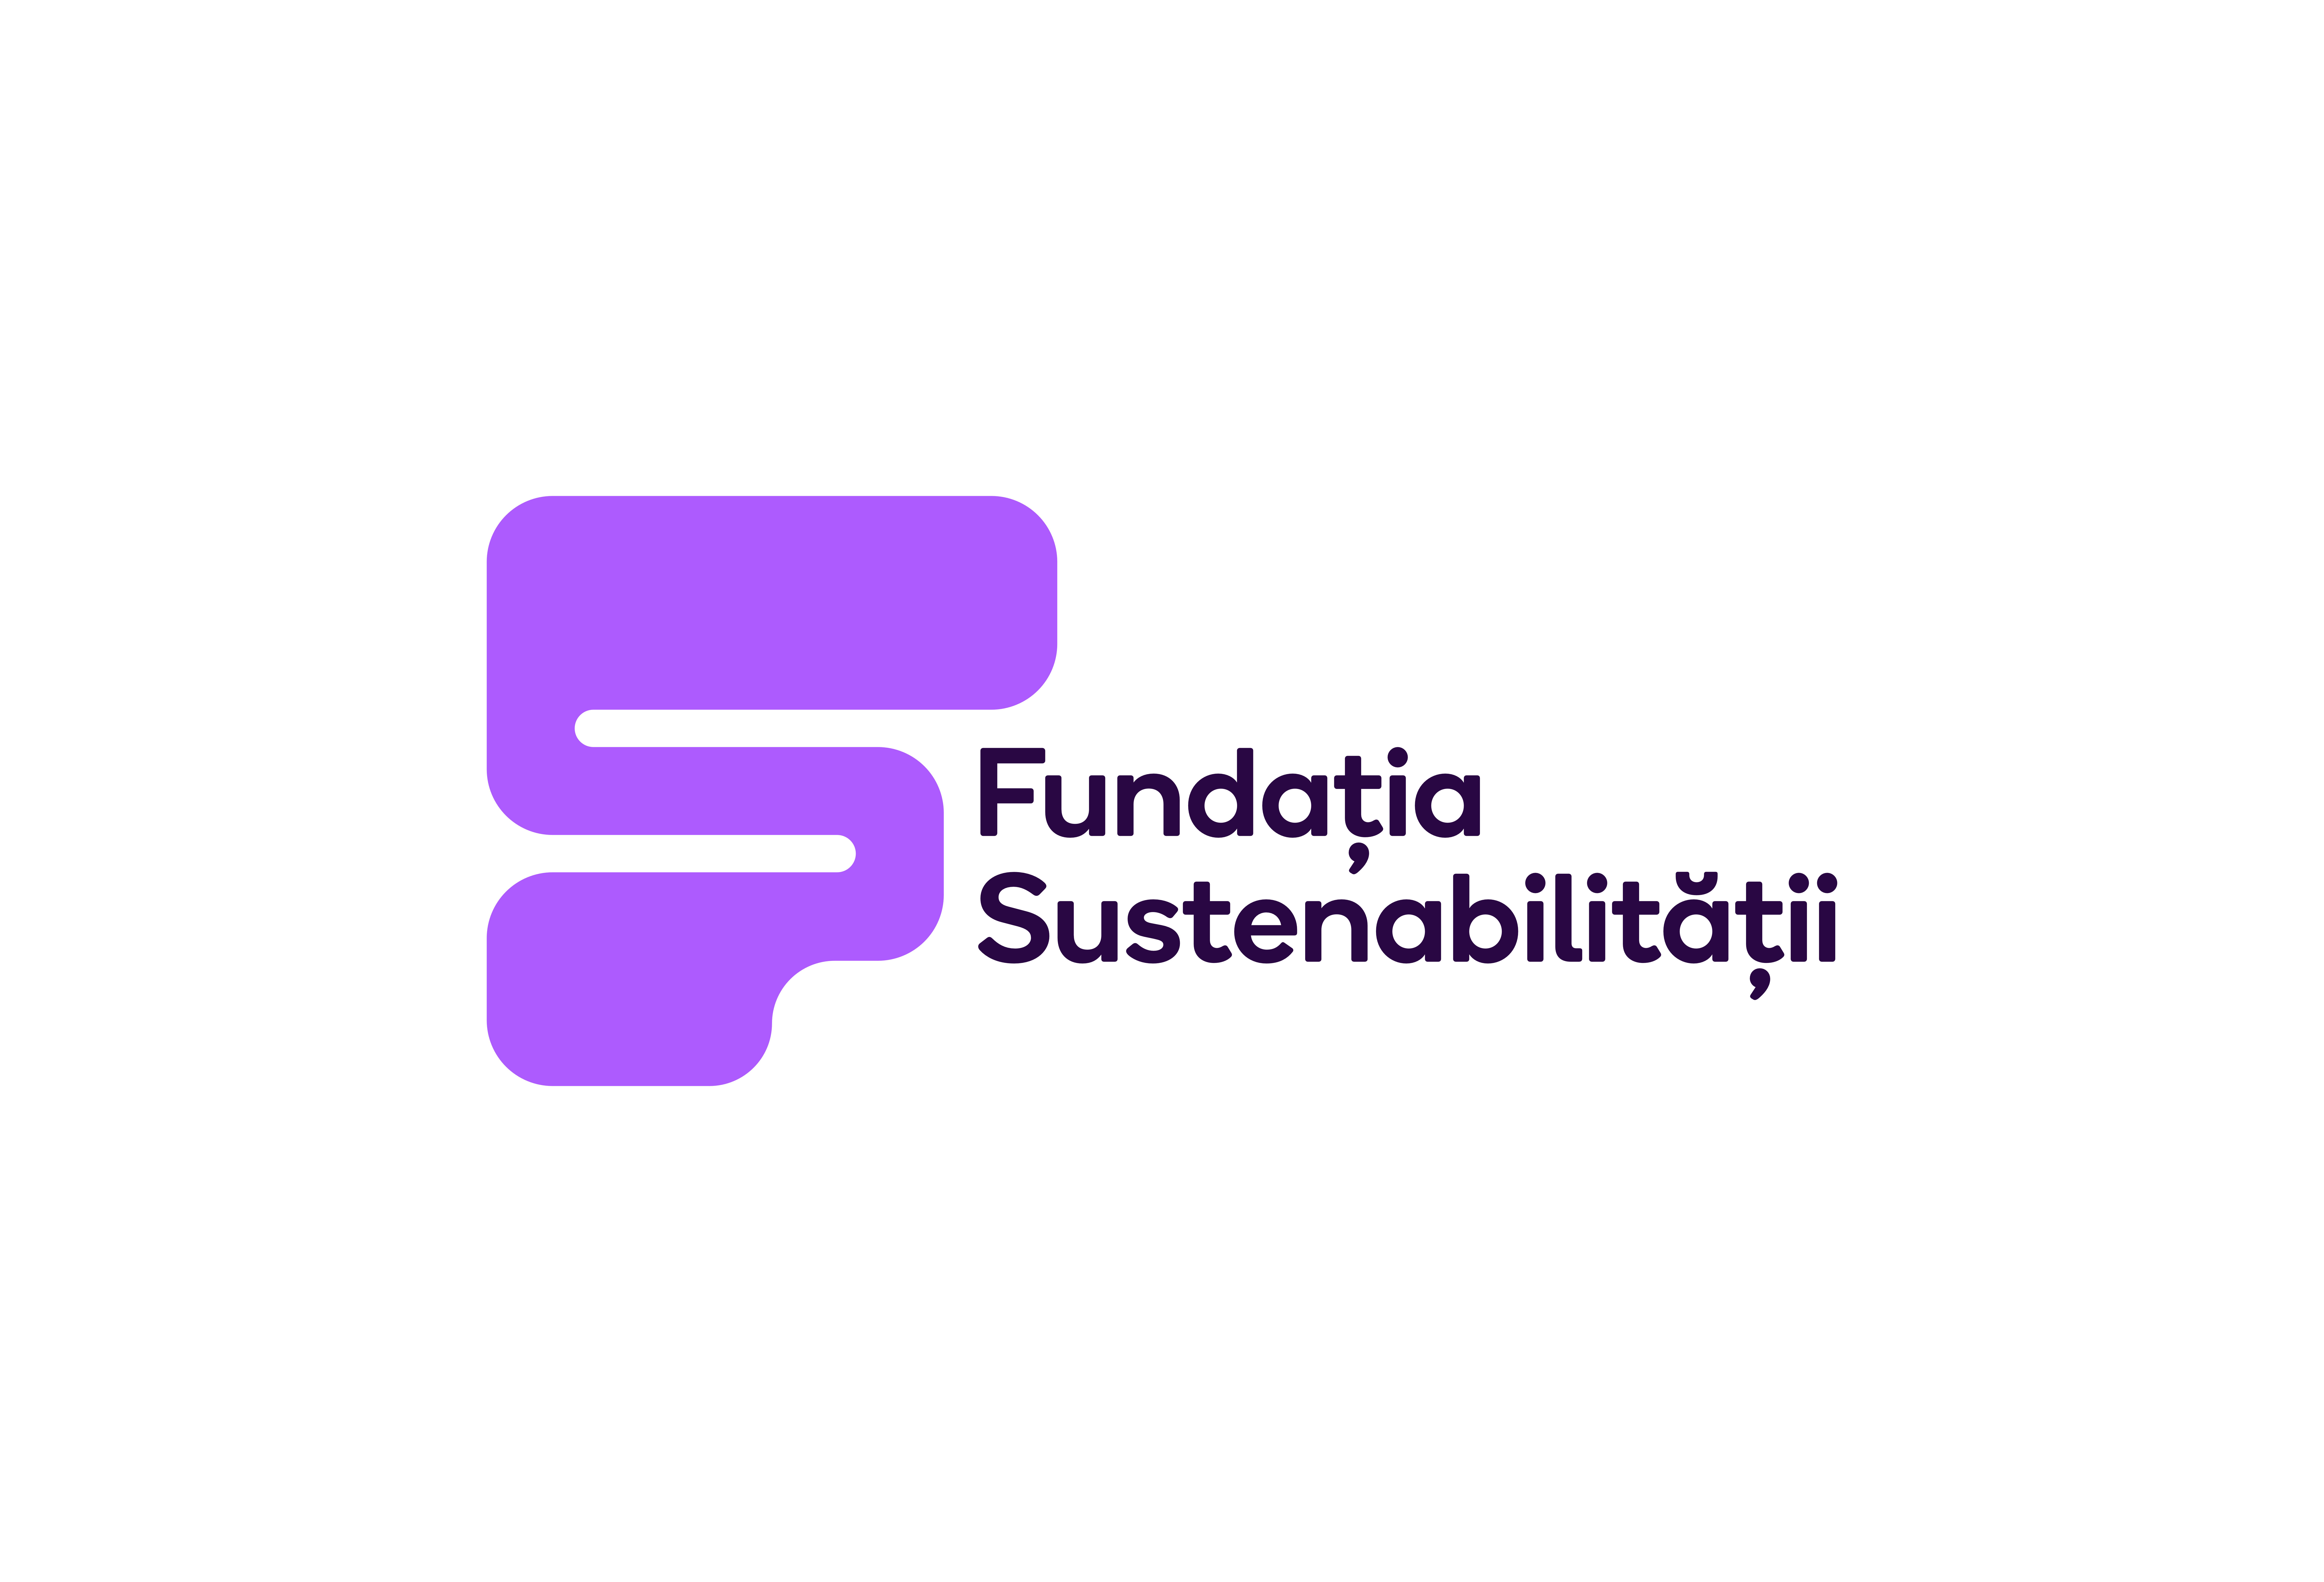 Fundatia Sustenabilitatii logo